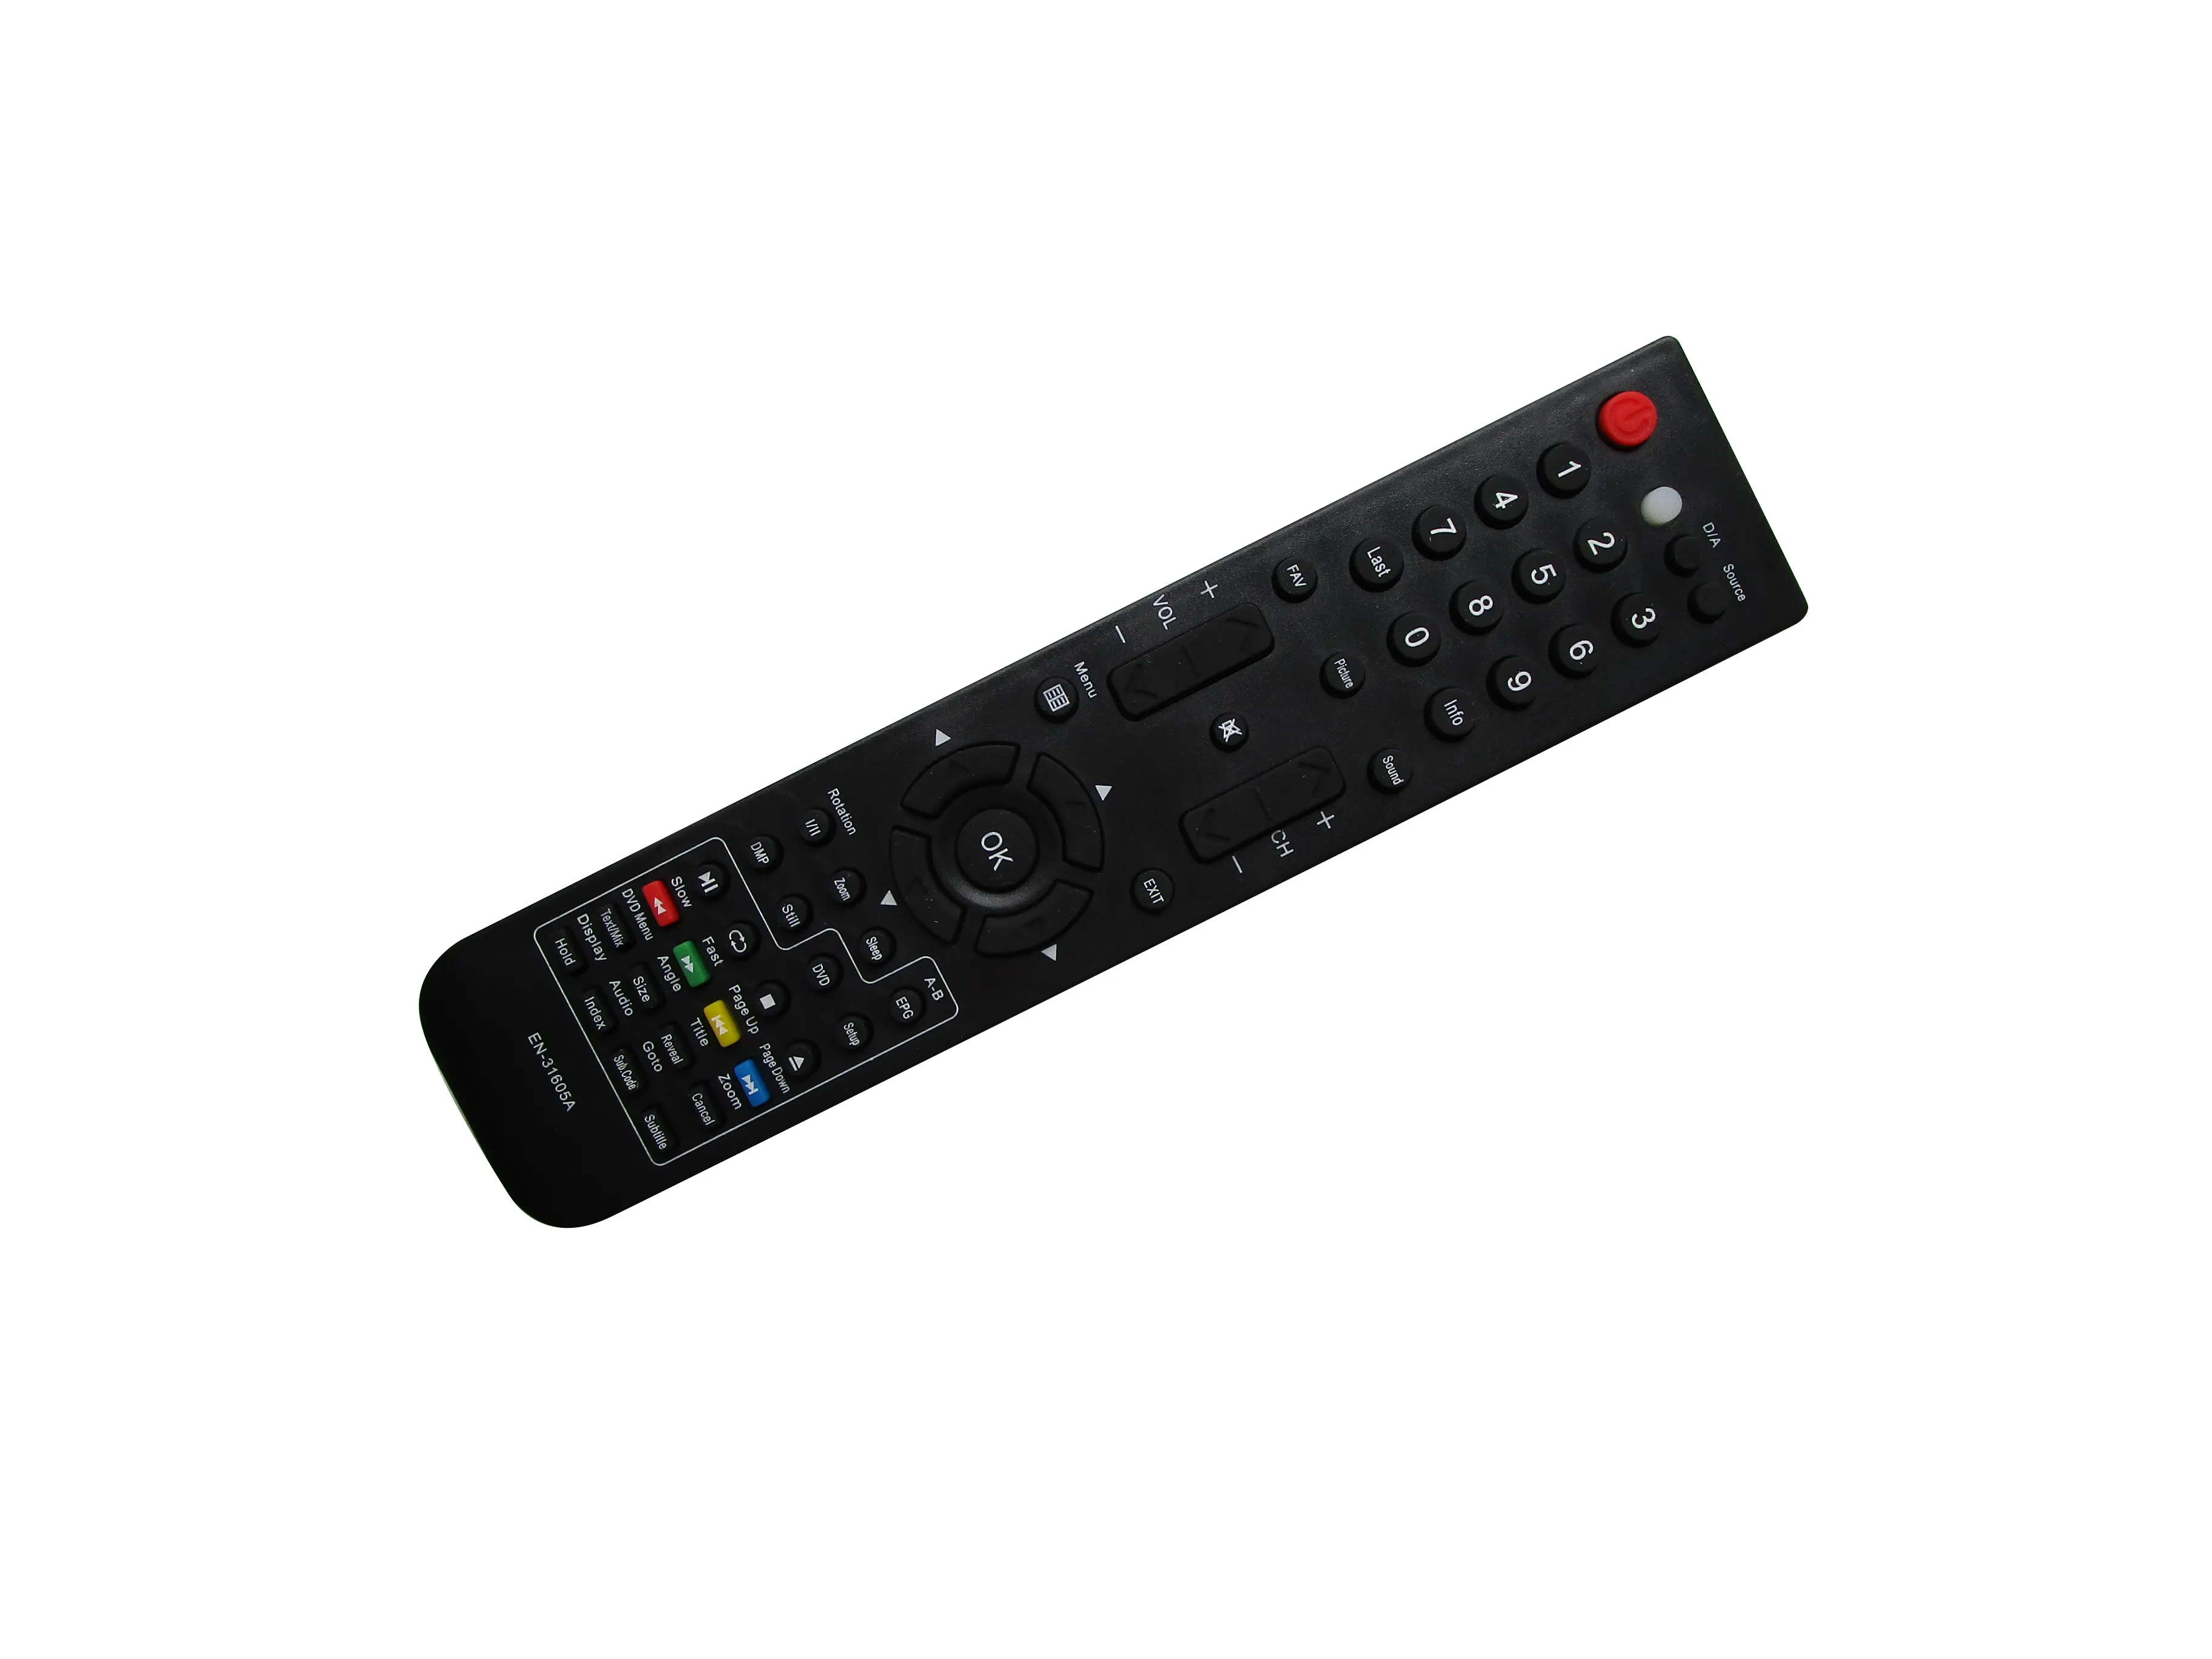 Remote Control For ROLSEN EN-31603R RL-42B04F RL-42A09105F RL-32L1001U RL-32A09105U RL-32A09105F RL-26A09105U RL-26A090195U LCD LED HDTV TV